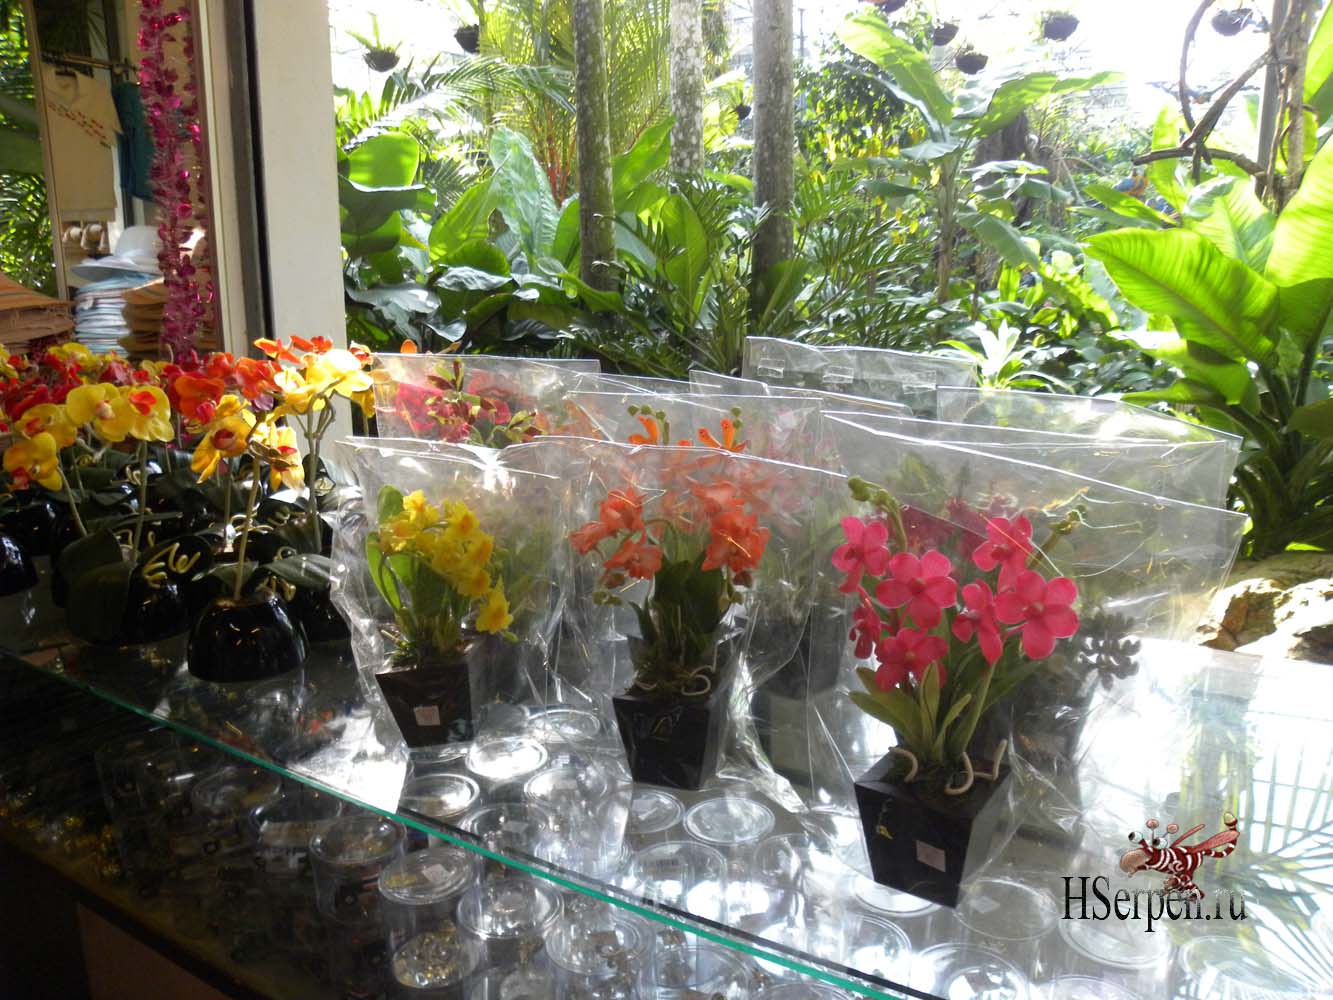 Привезите из Таиланда в подарок орхидеи